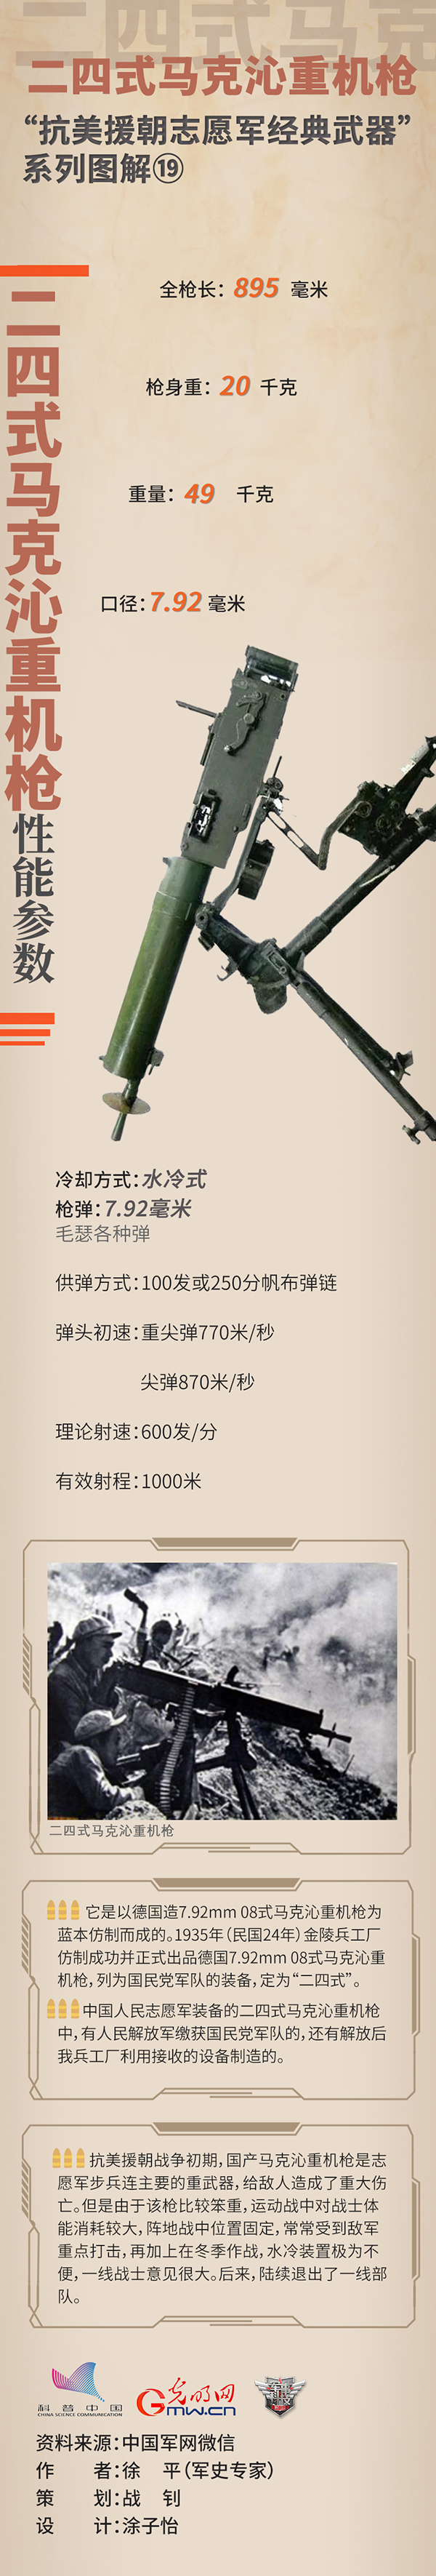 抗美援朝志愿军经典武器⑲二四式马克沁重机枪